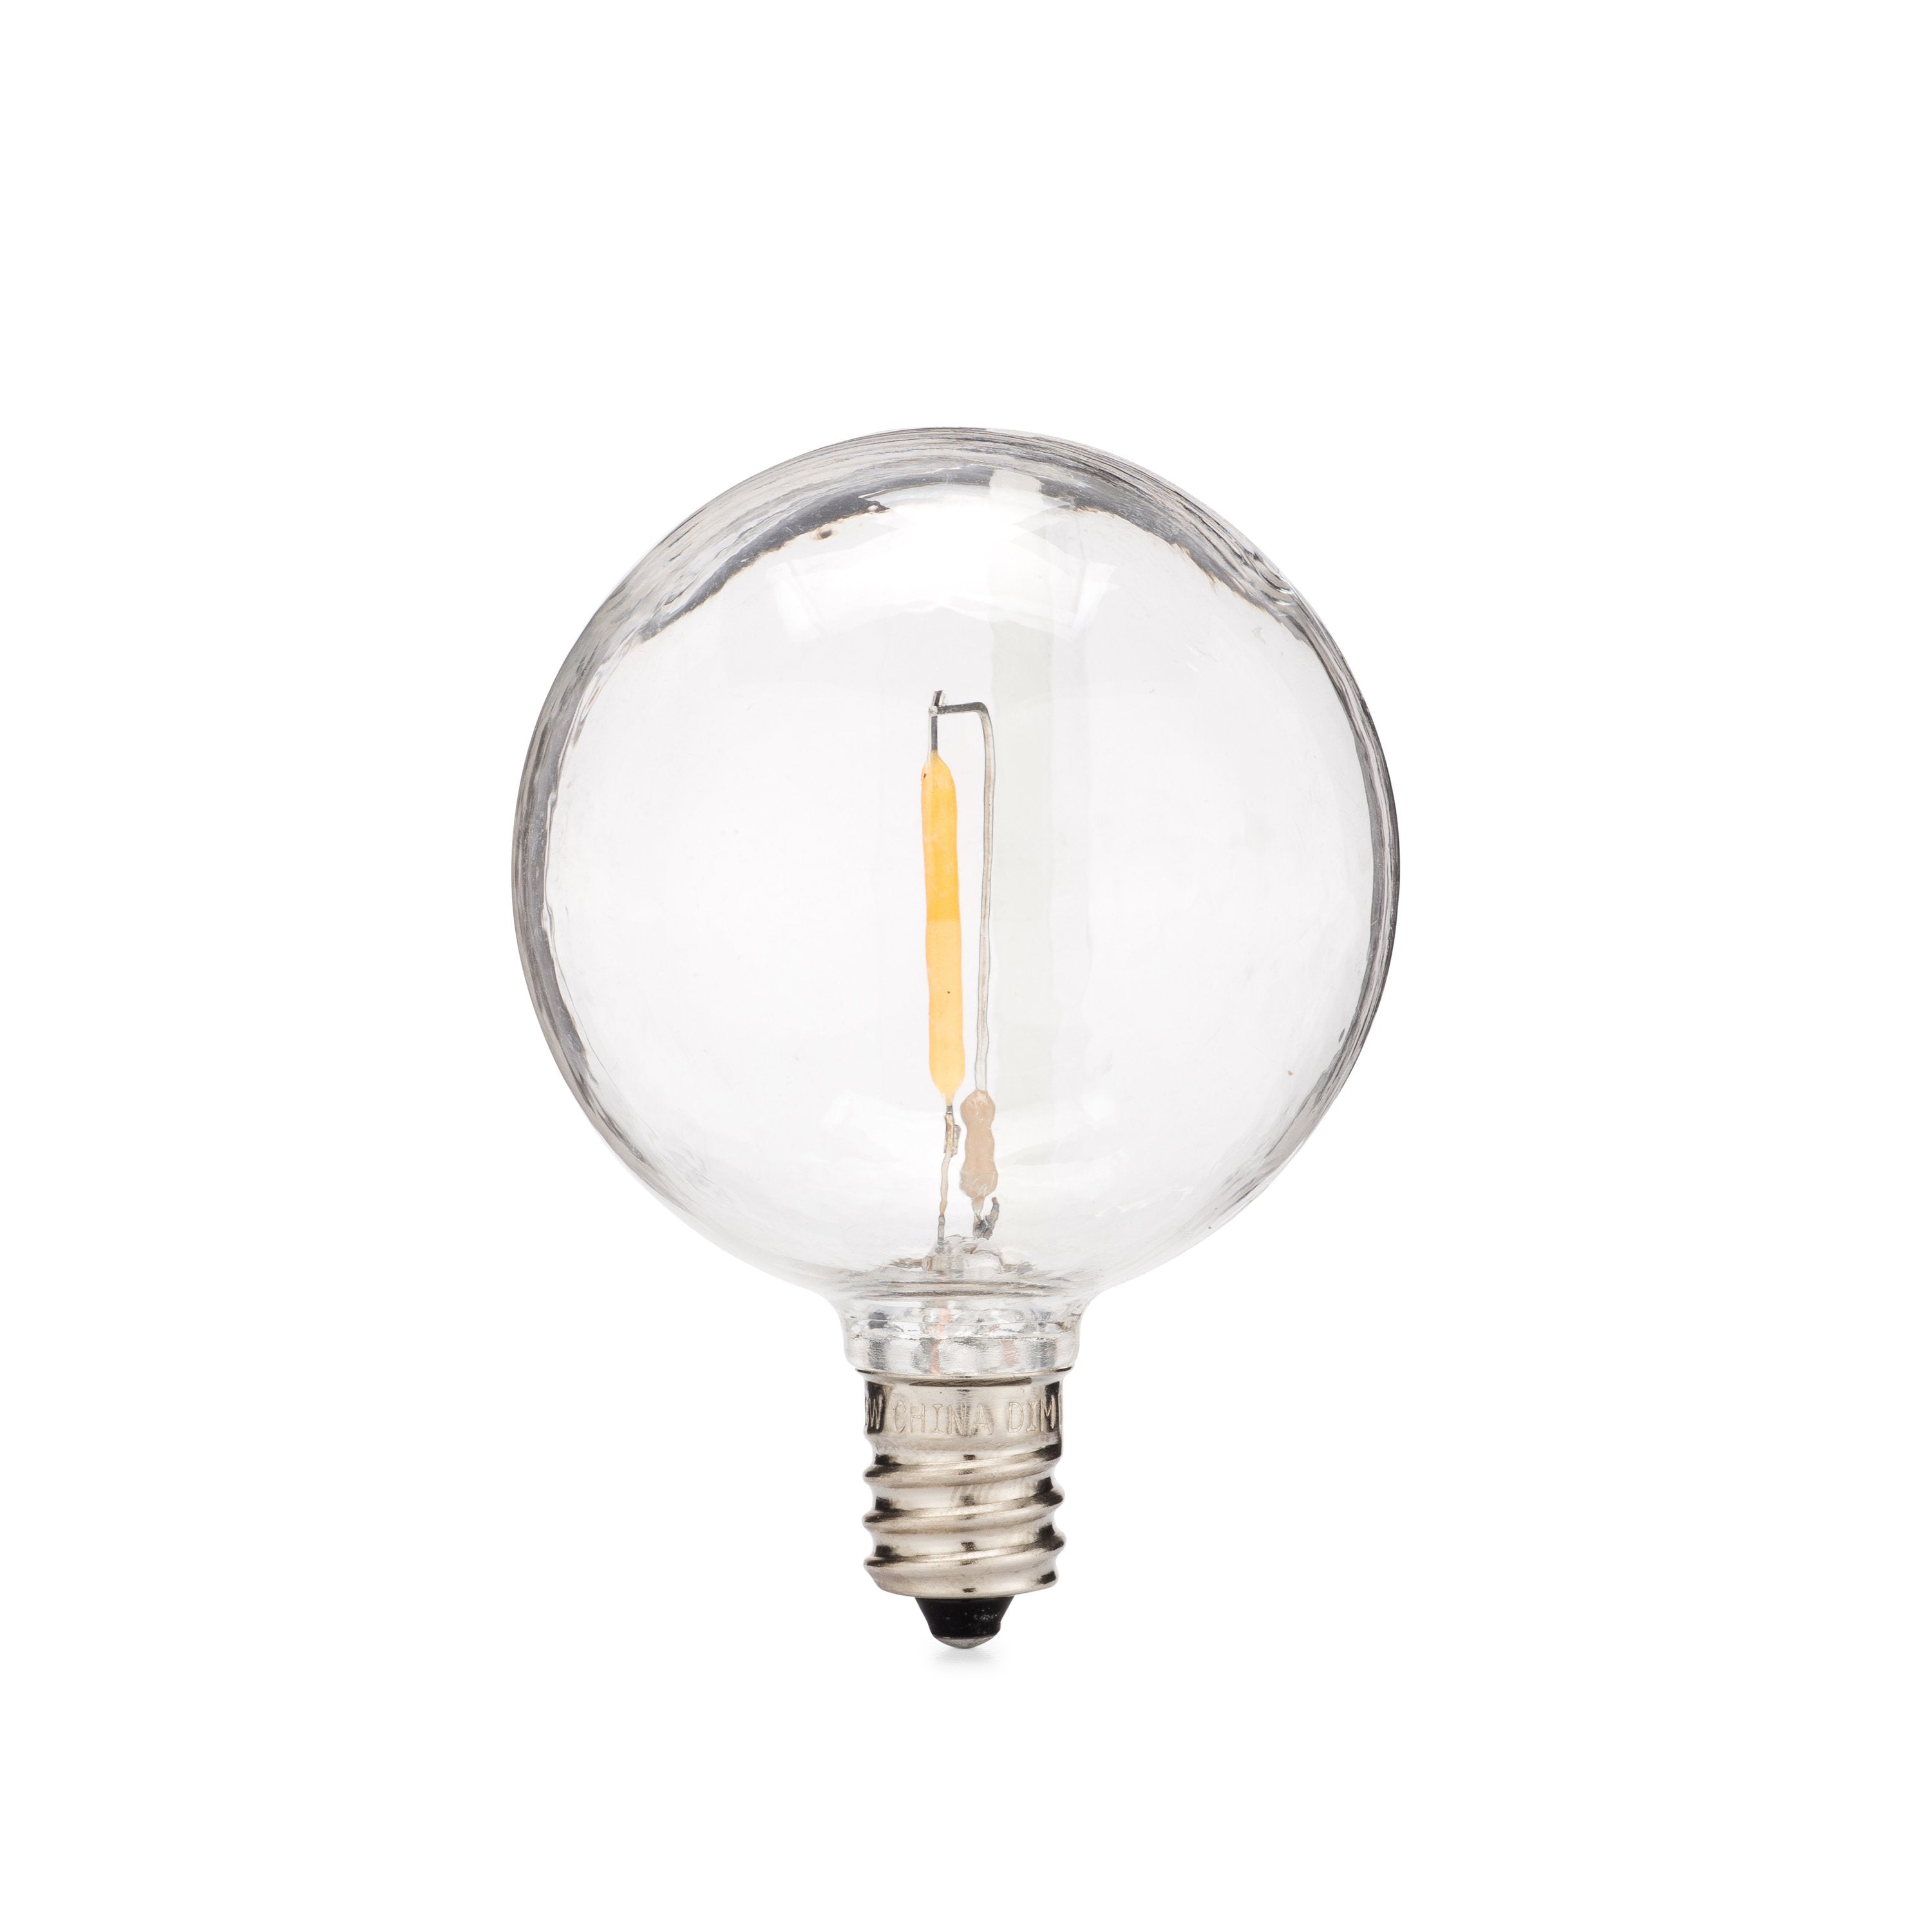 LED Filament G50 Bulbs · 25 Pack - HLO Lighting